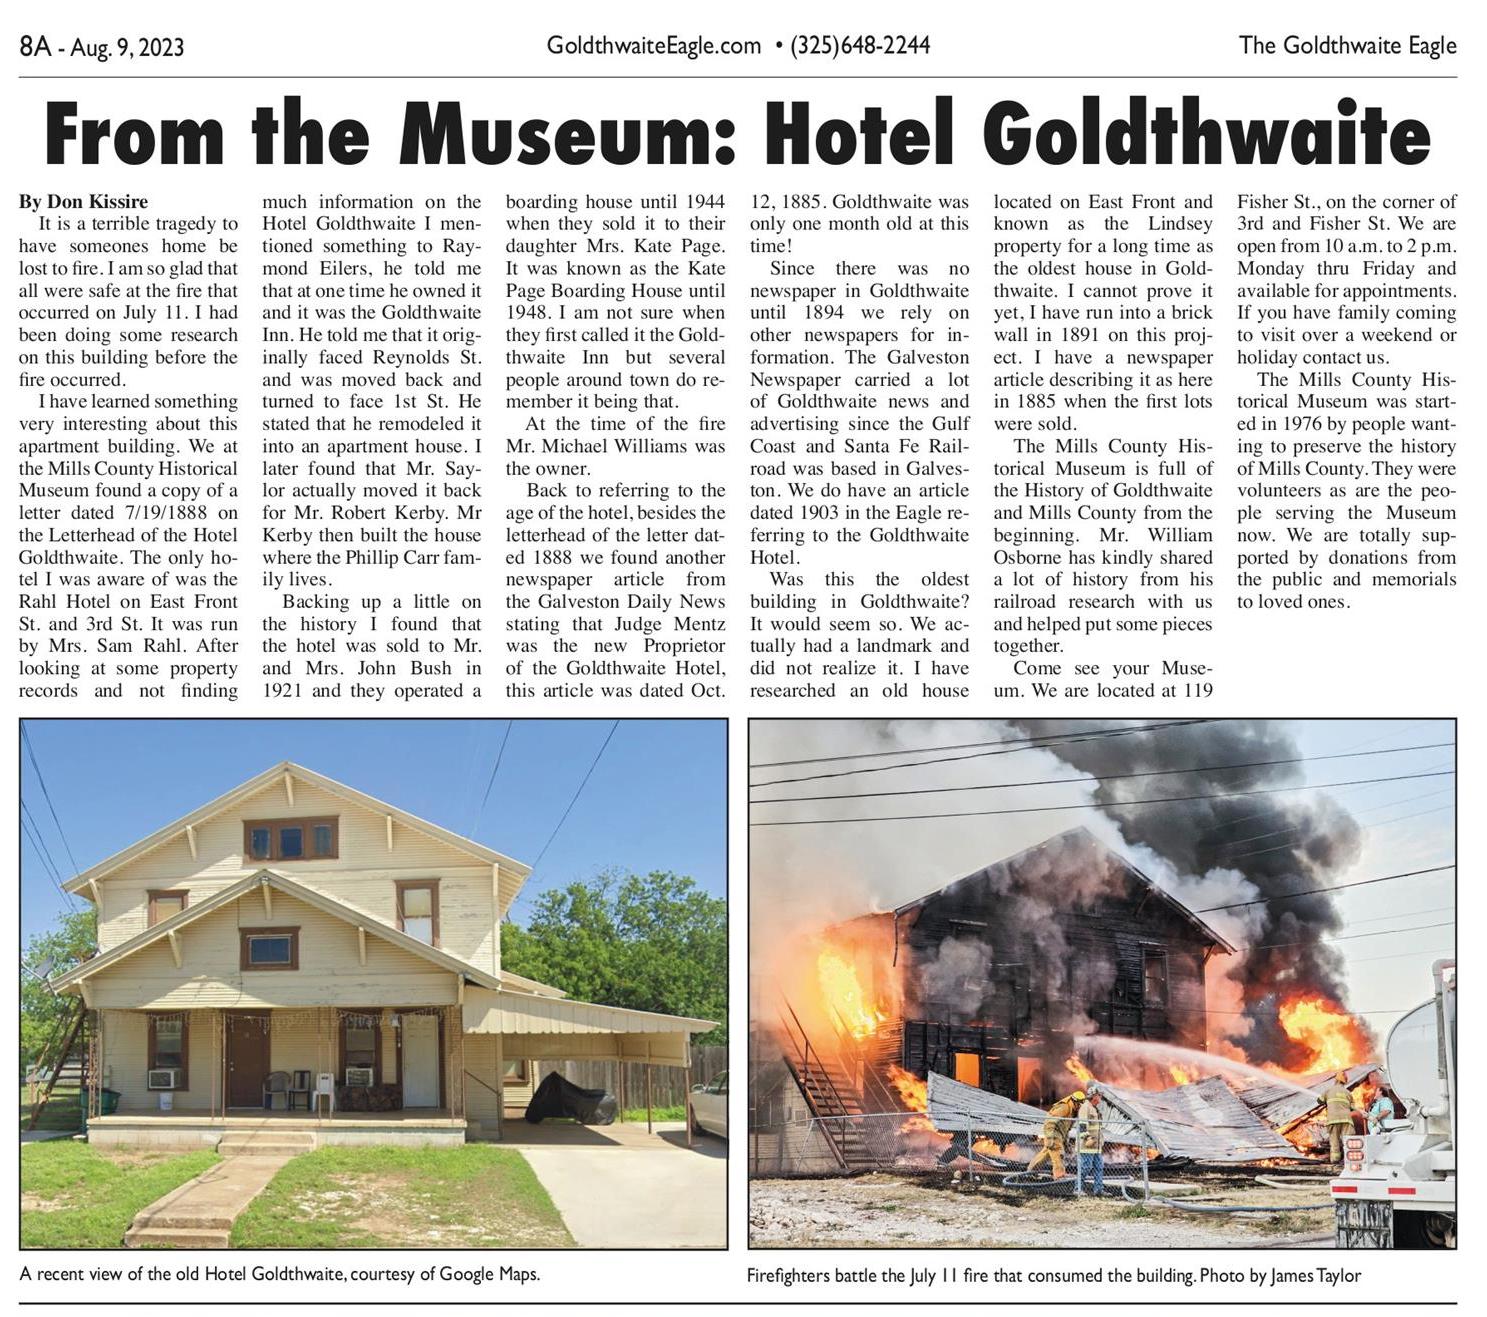 Hotel Goldthwaite